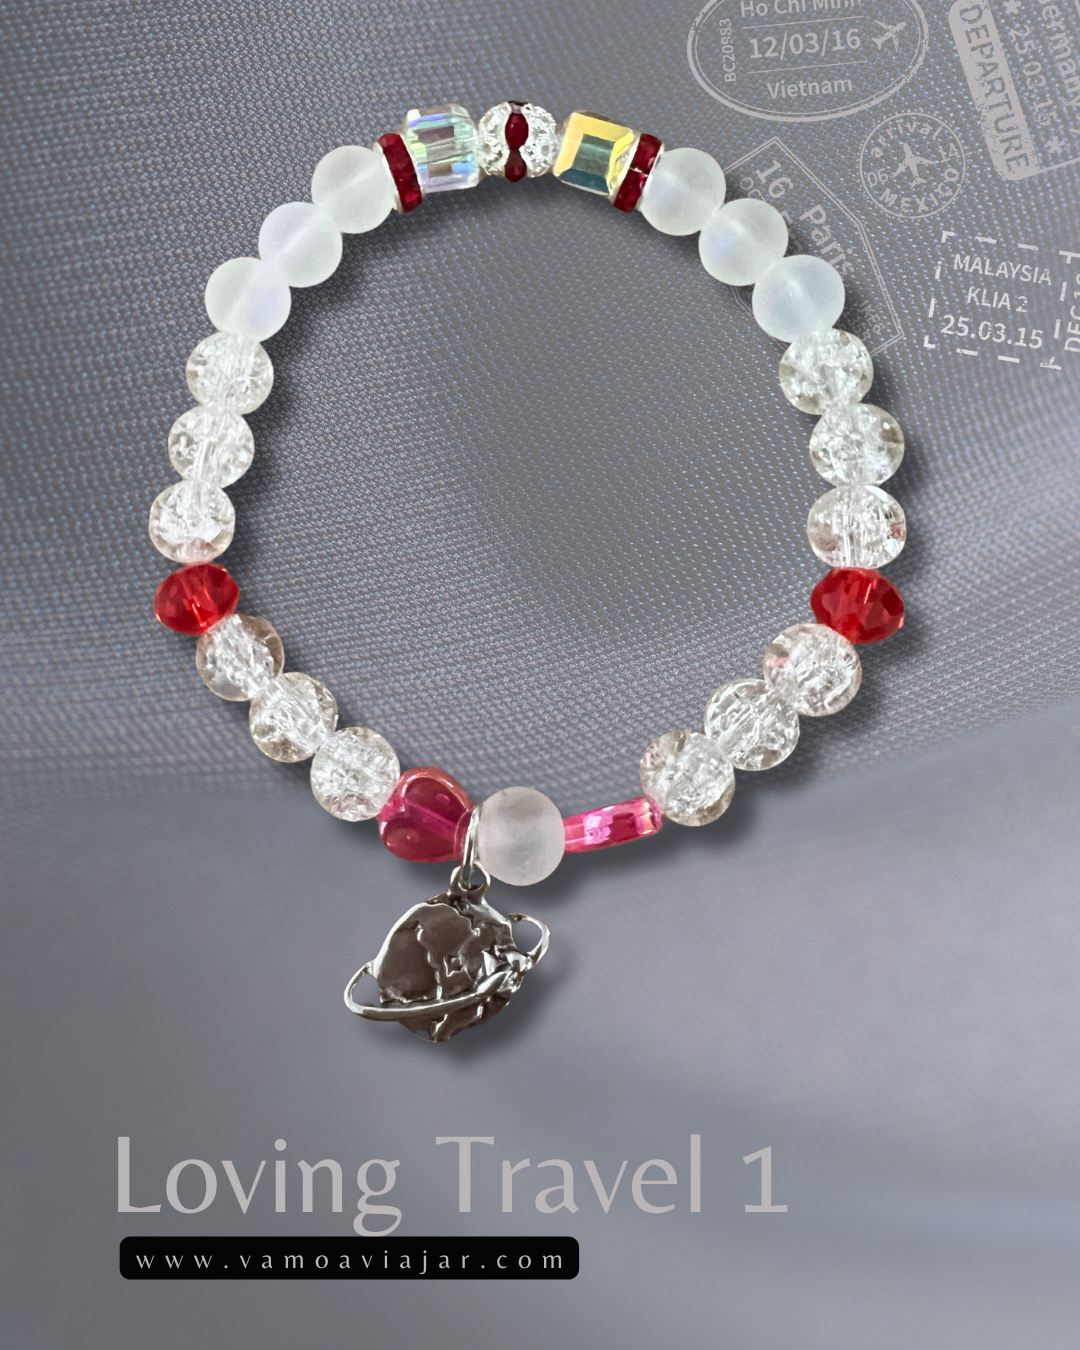 Bracelet: Loving Travel 1